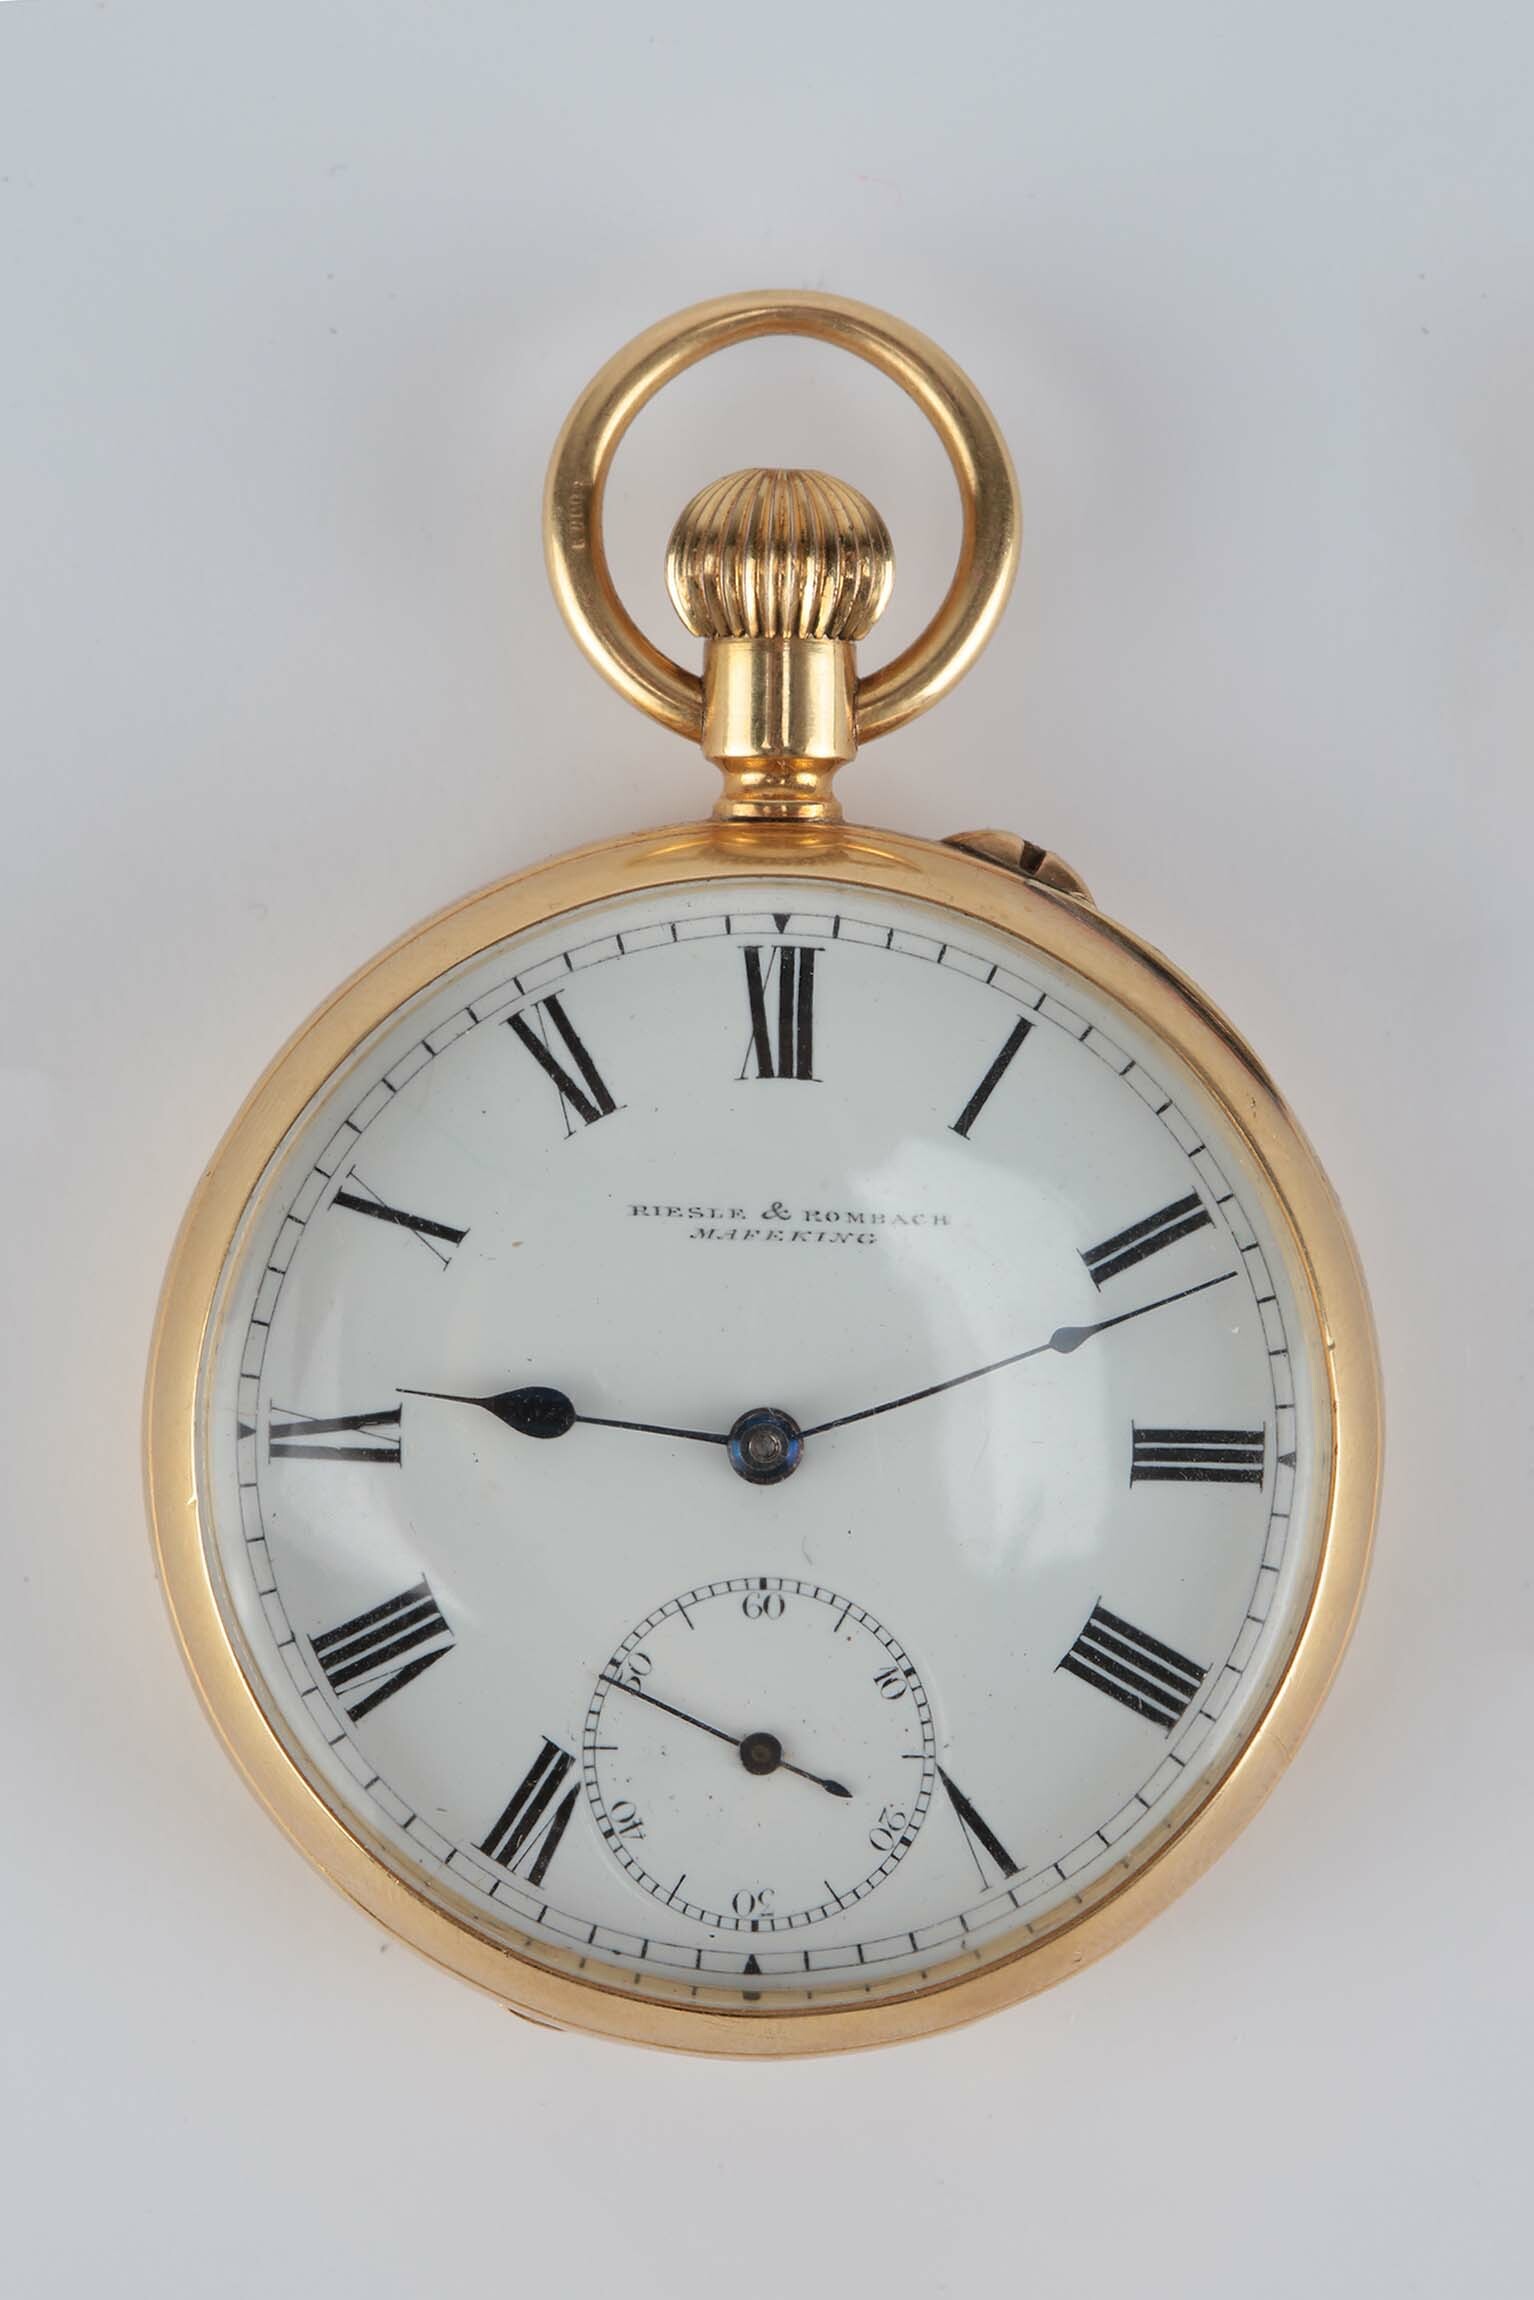 Taschenuhr, Riesle und Rombach, Mafeking (Südafrika), 1901 (Deutsches Uhrenmuseum CC BY-SA)